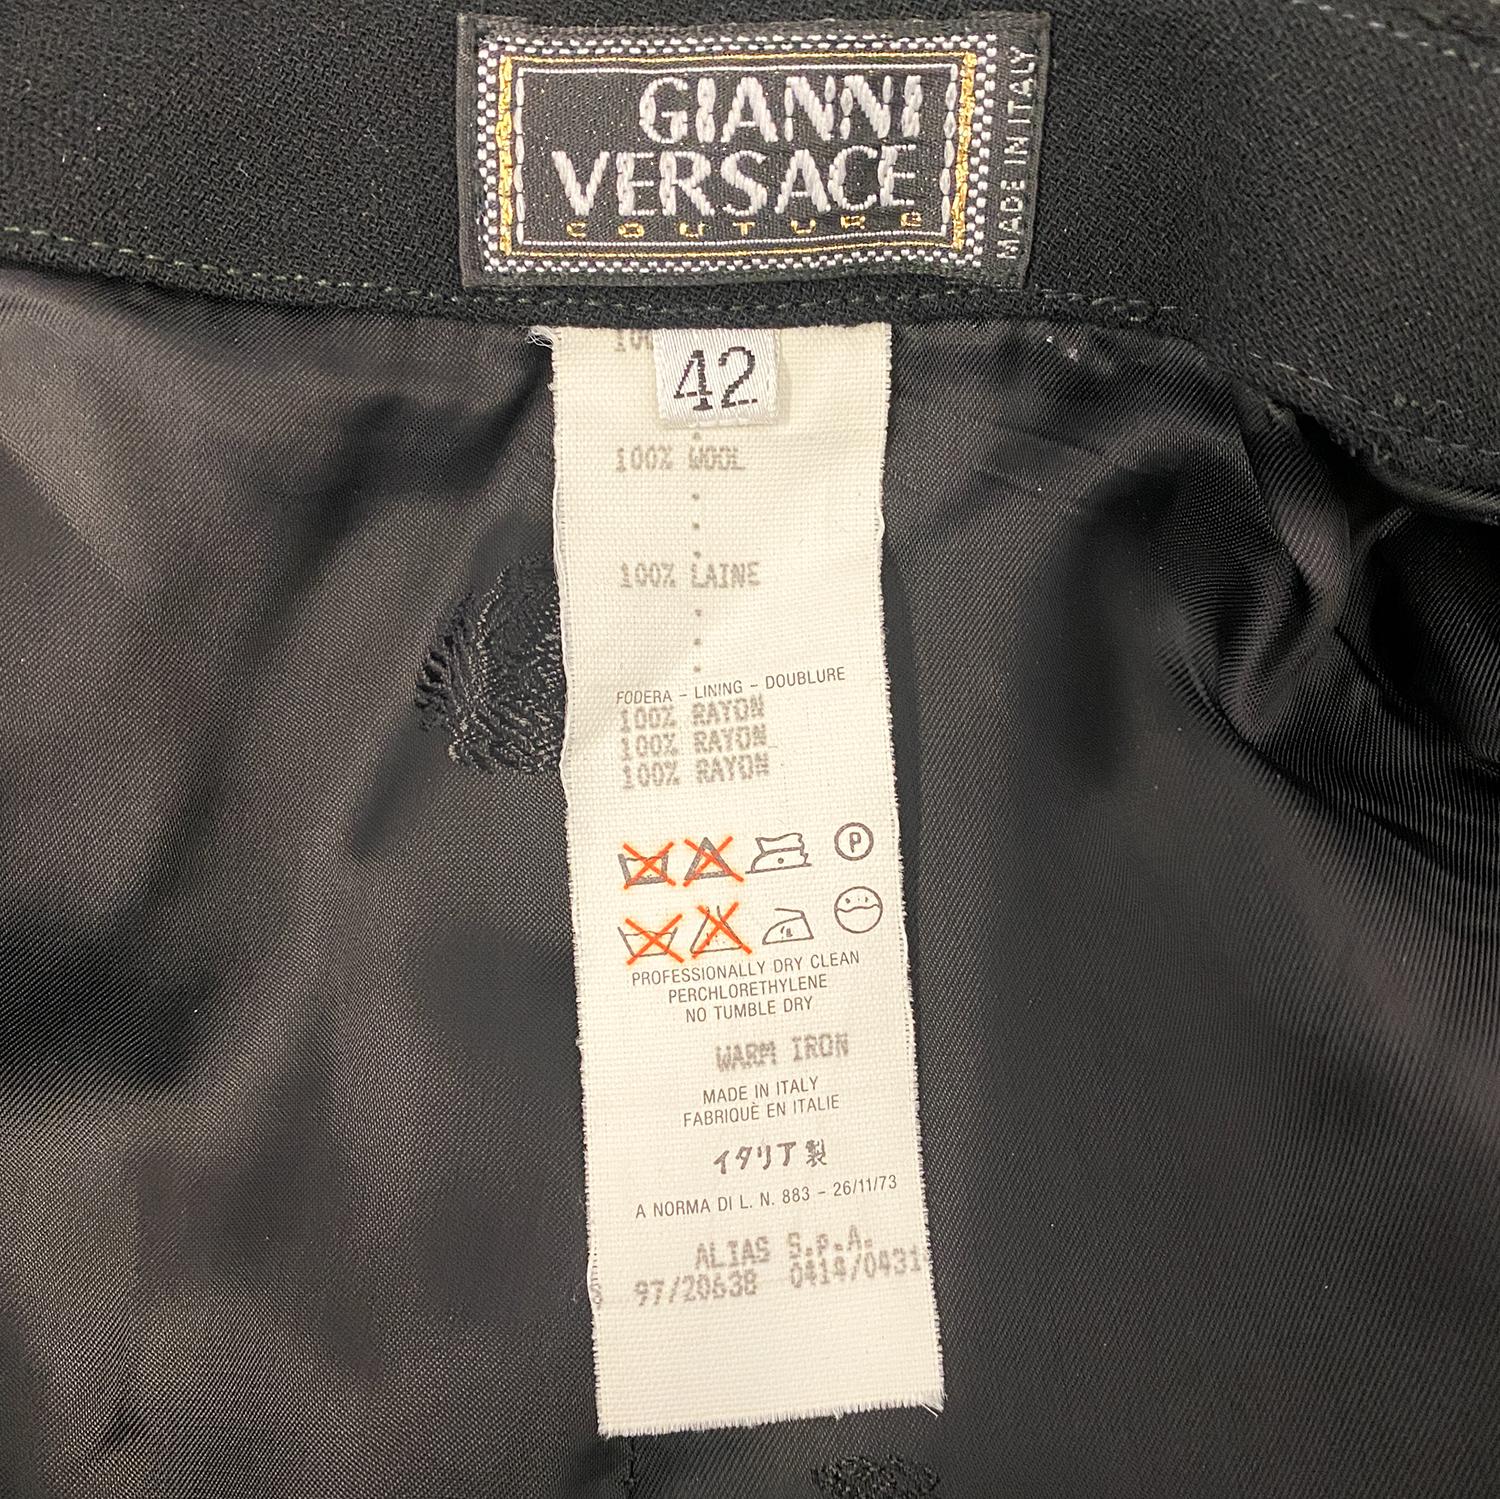 VERSACE Vintage 1997 Contour Skirt Suit Gianni Versace Couture For Sale 3